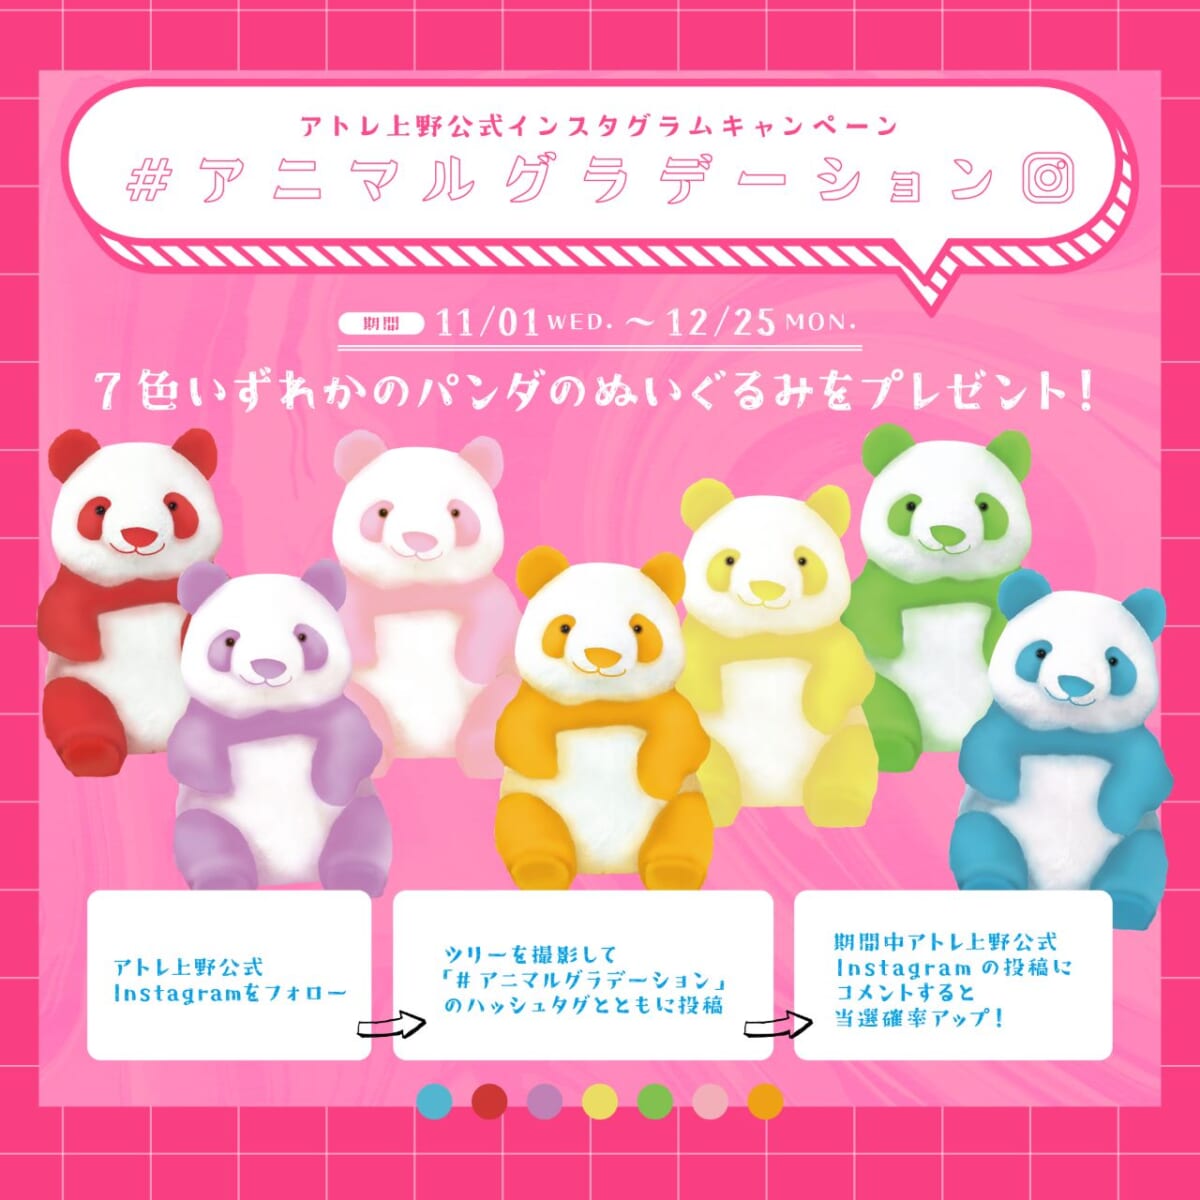 【JR上野駅】カラフルなパンダが彩る巨大ツリーが登場！インスタ投稿でぬいぐるみが当たる！